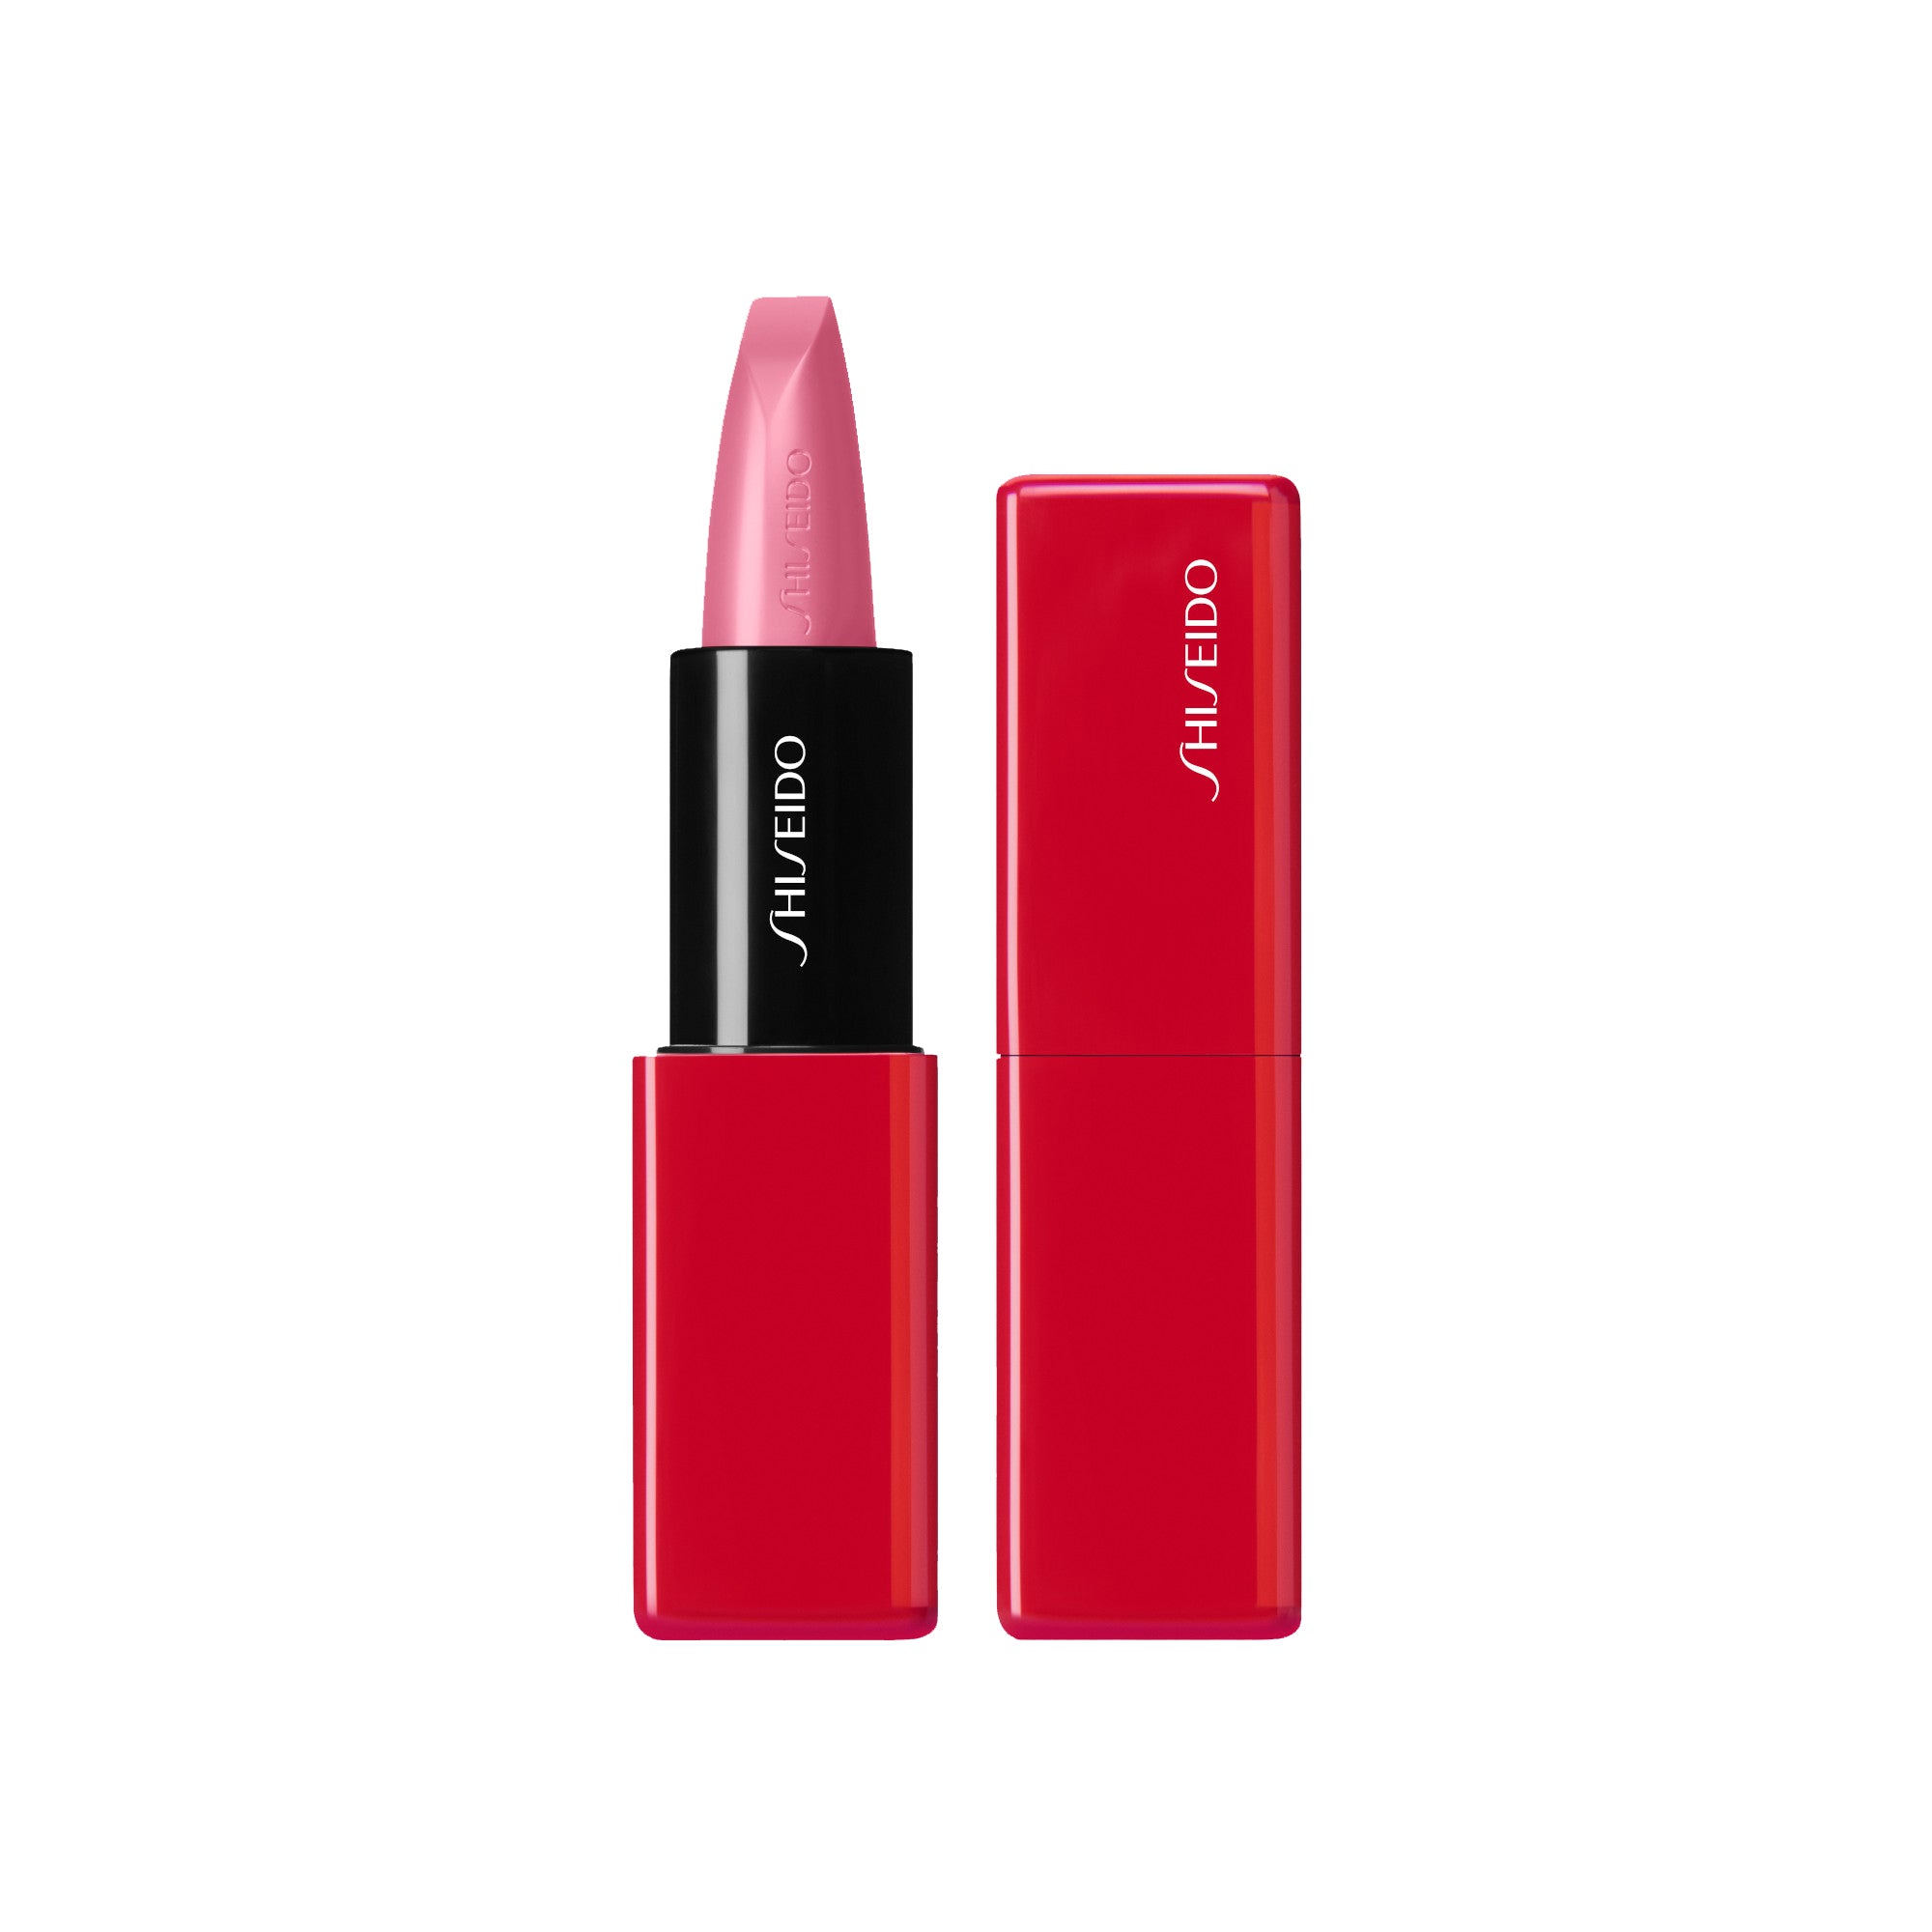 Shiseido TechnoSatin Long Lasting & Hydrating Gel Lipstick pulsar pink